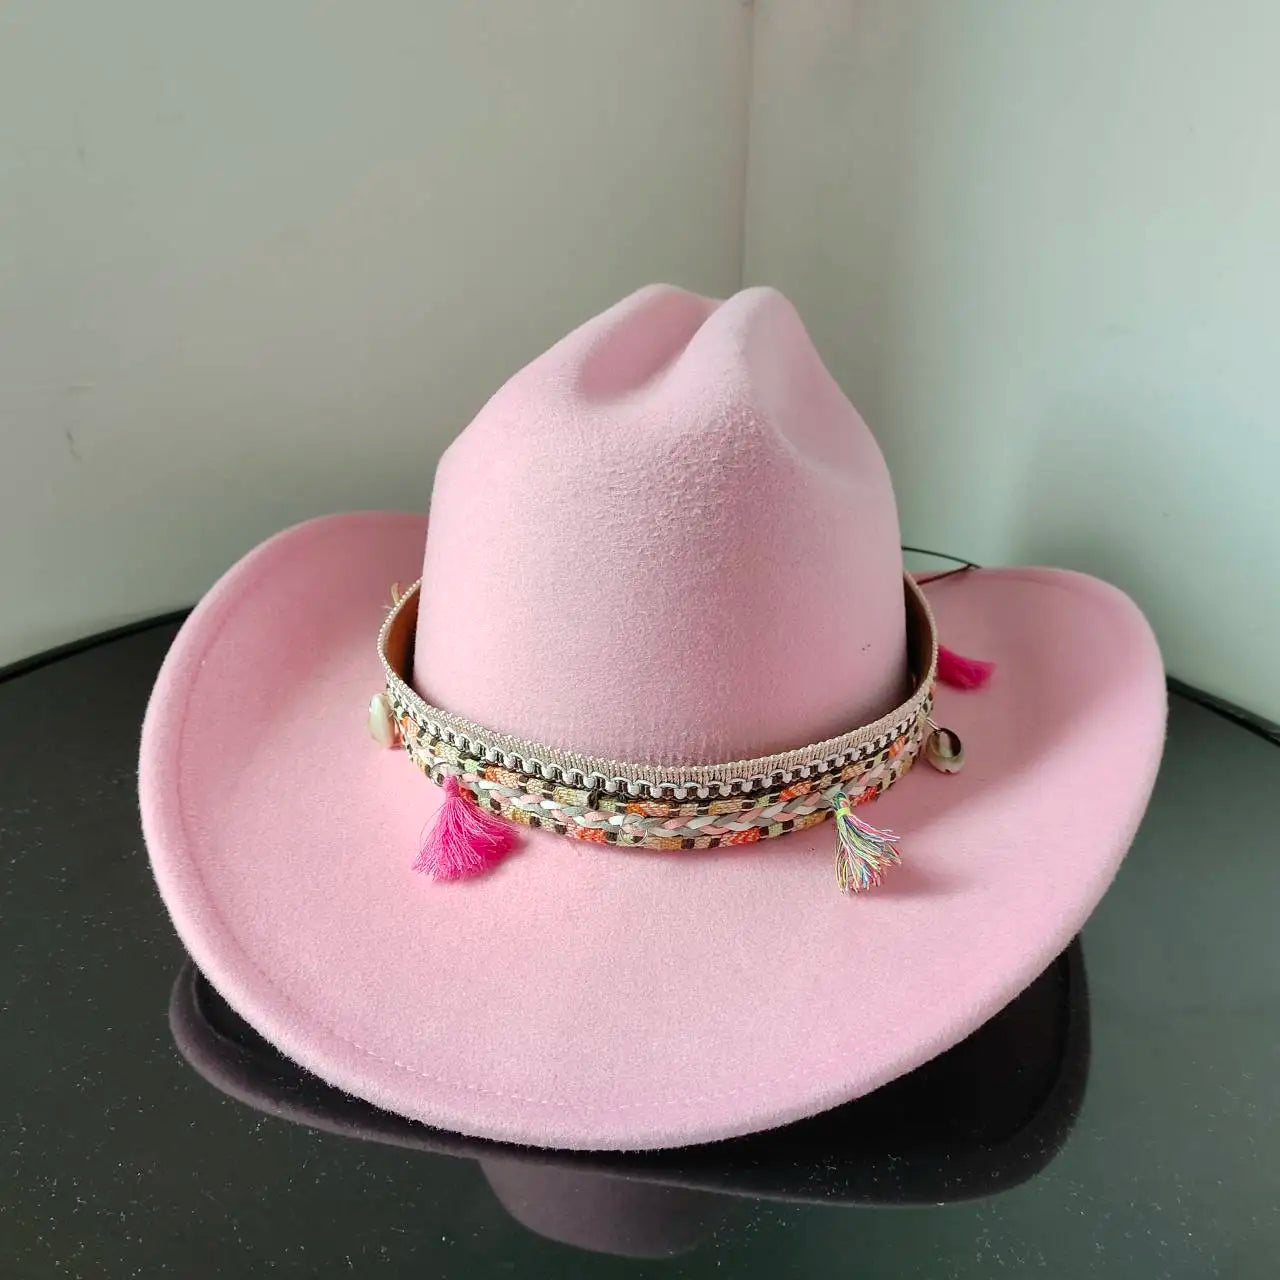 Chapeau Cowboy - CactusCraze - La Maison du Chapeau